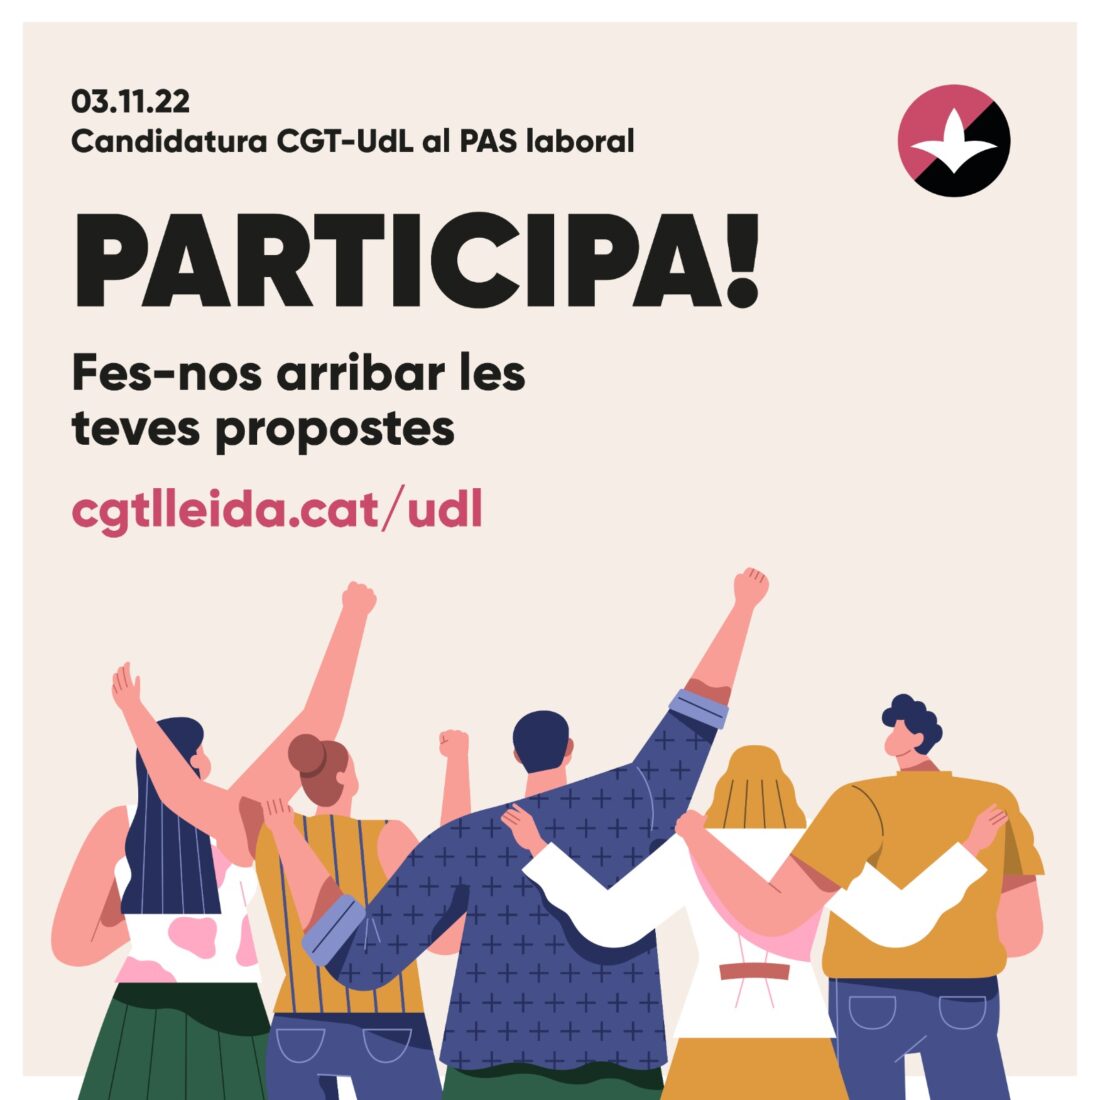 La CGT entra con fuerza en la Universitat de Lleida